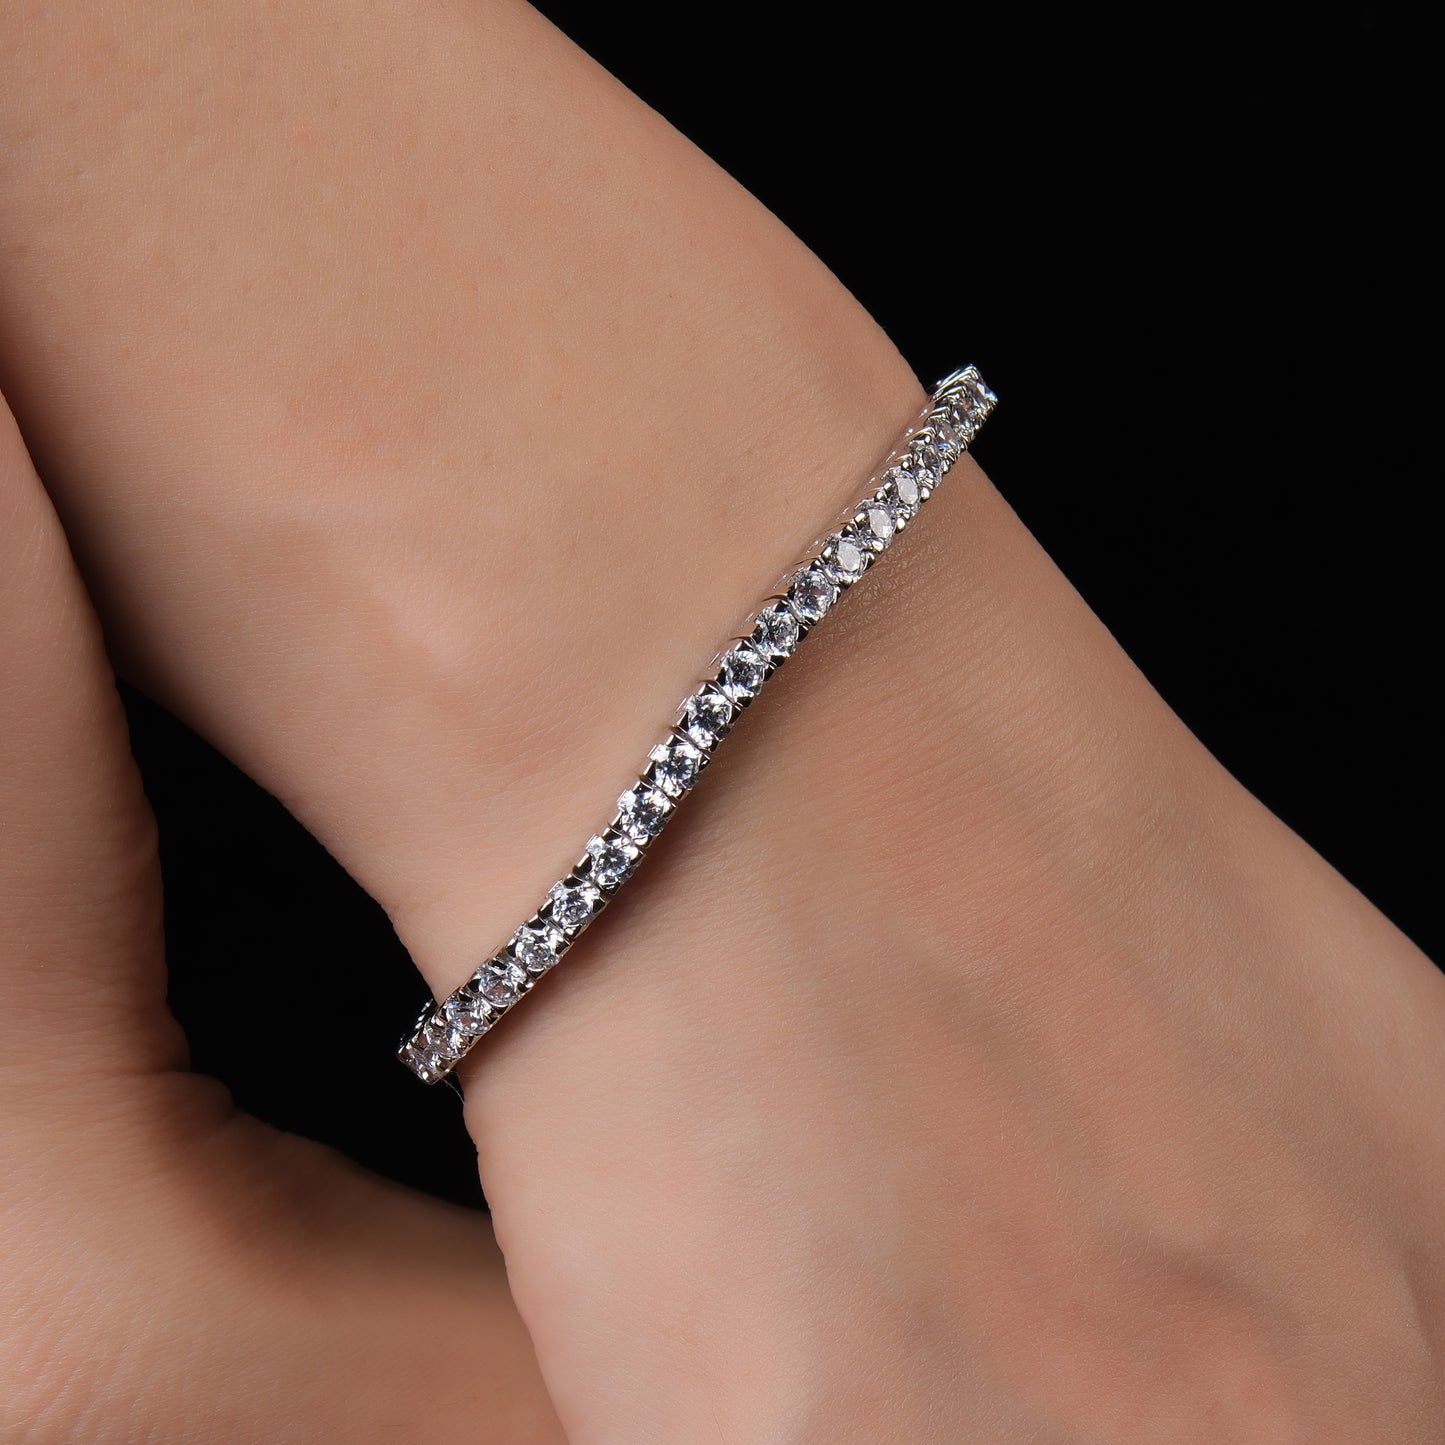 Slim silver design bracelet